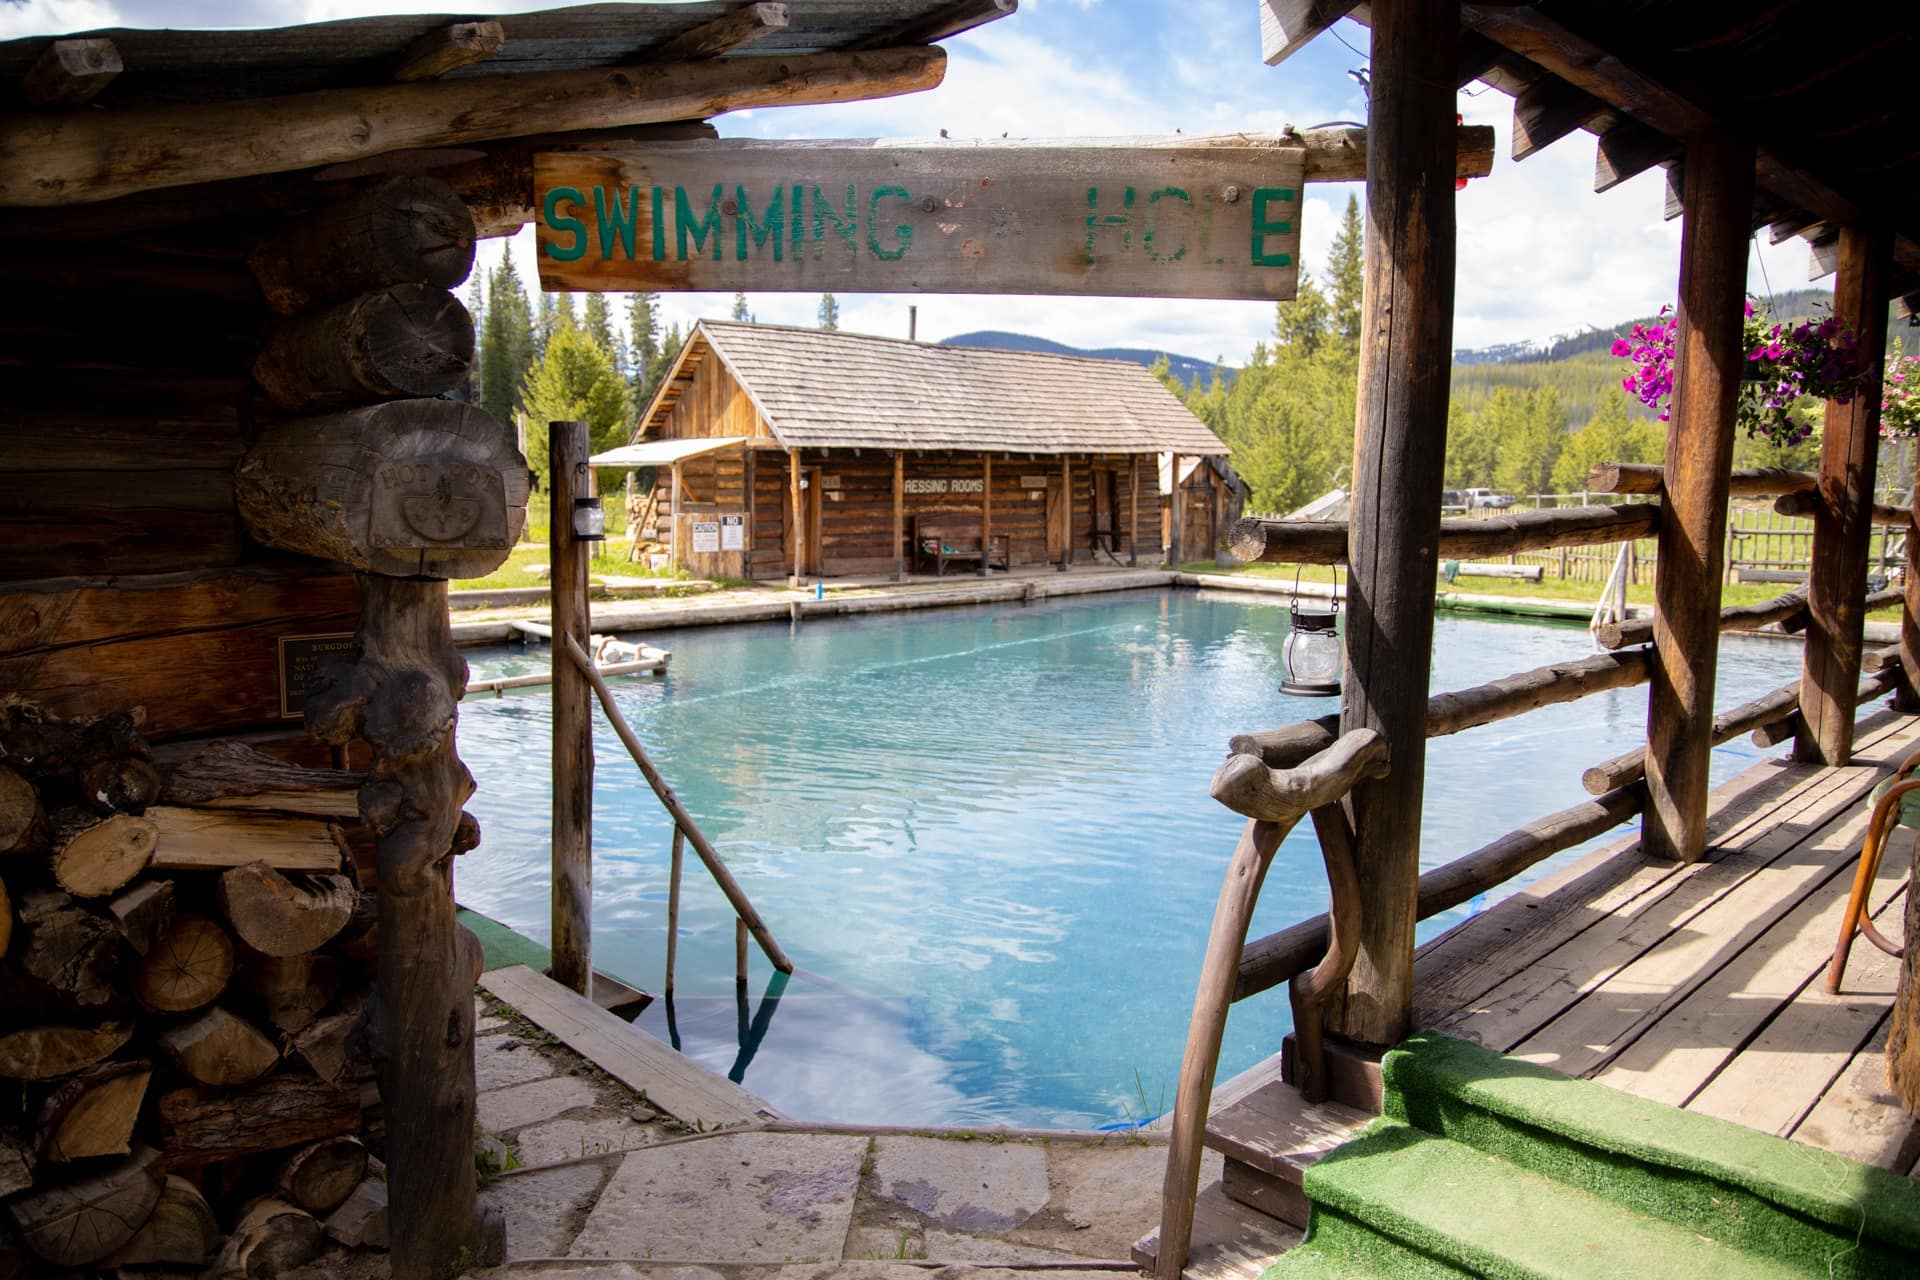 爱达荷州Burgdorf温泉胜地的一个大温泉池。小木屋环绕着泳池，泳池入口悬挂着“游泳池”的标志